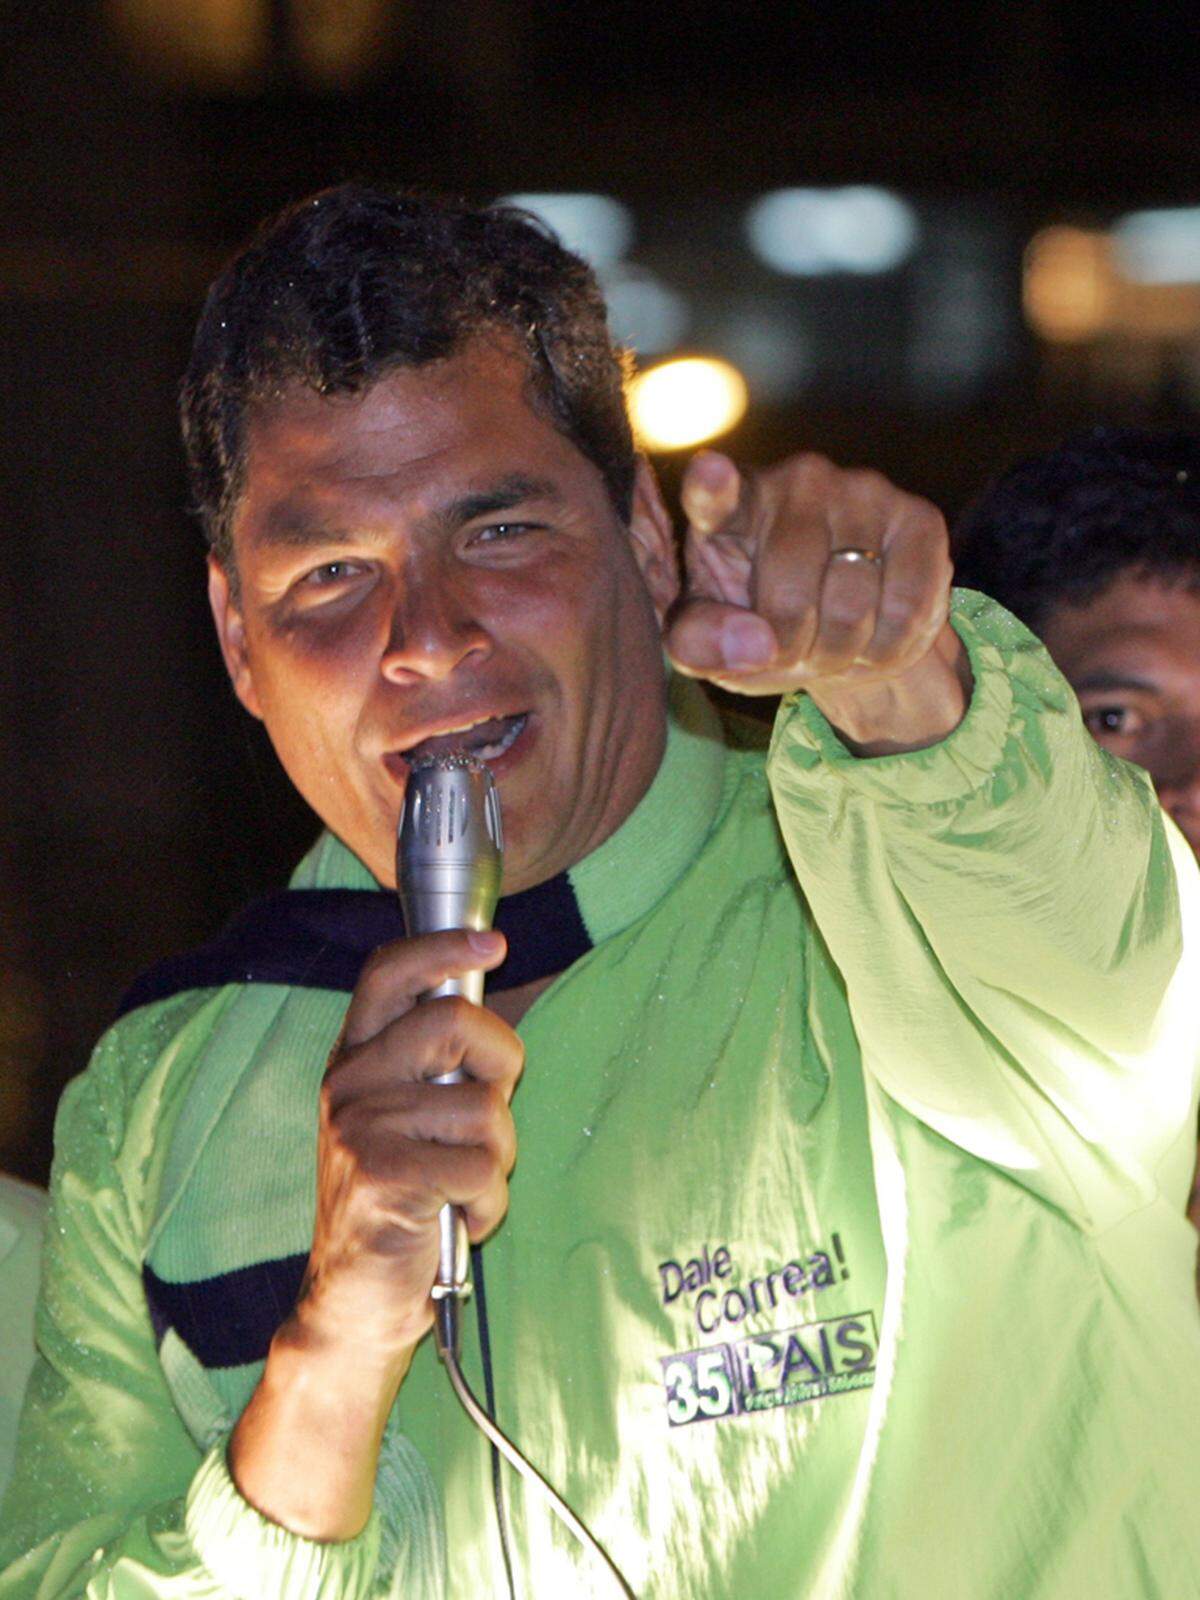 Seit 2007 Präsident ist Rafael Correa  Präsident von Ecuador. Der 49-jährige Ökonom sieht sich selbst als "christlichen Linken" und initiierte eine "Bürgerrevolution" gegen etablierte Politikstrukturen. Der nach eigenen Angaben "gute Freund" von Hugo Chavez startete staatliche Sozialprogramme.